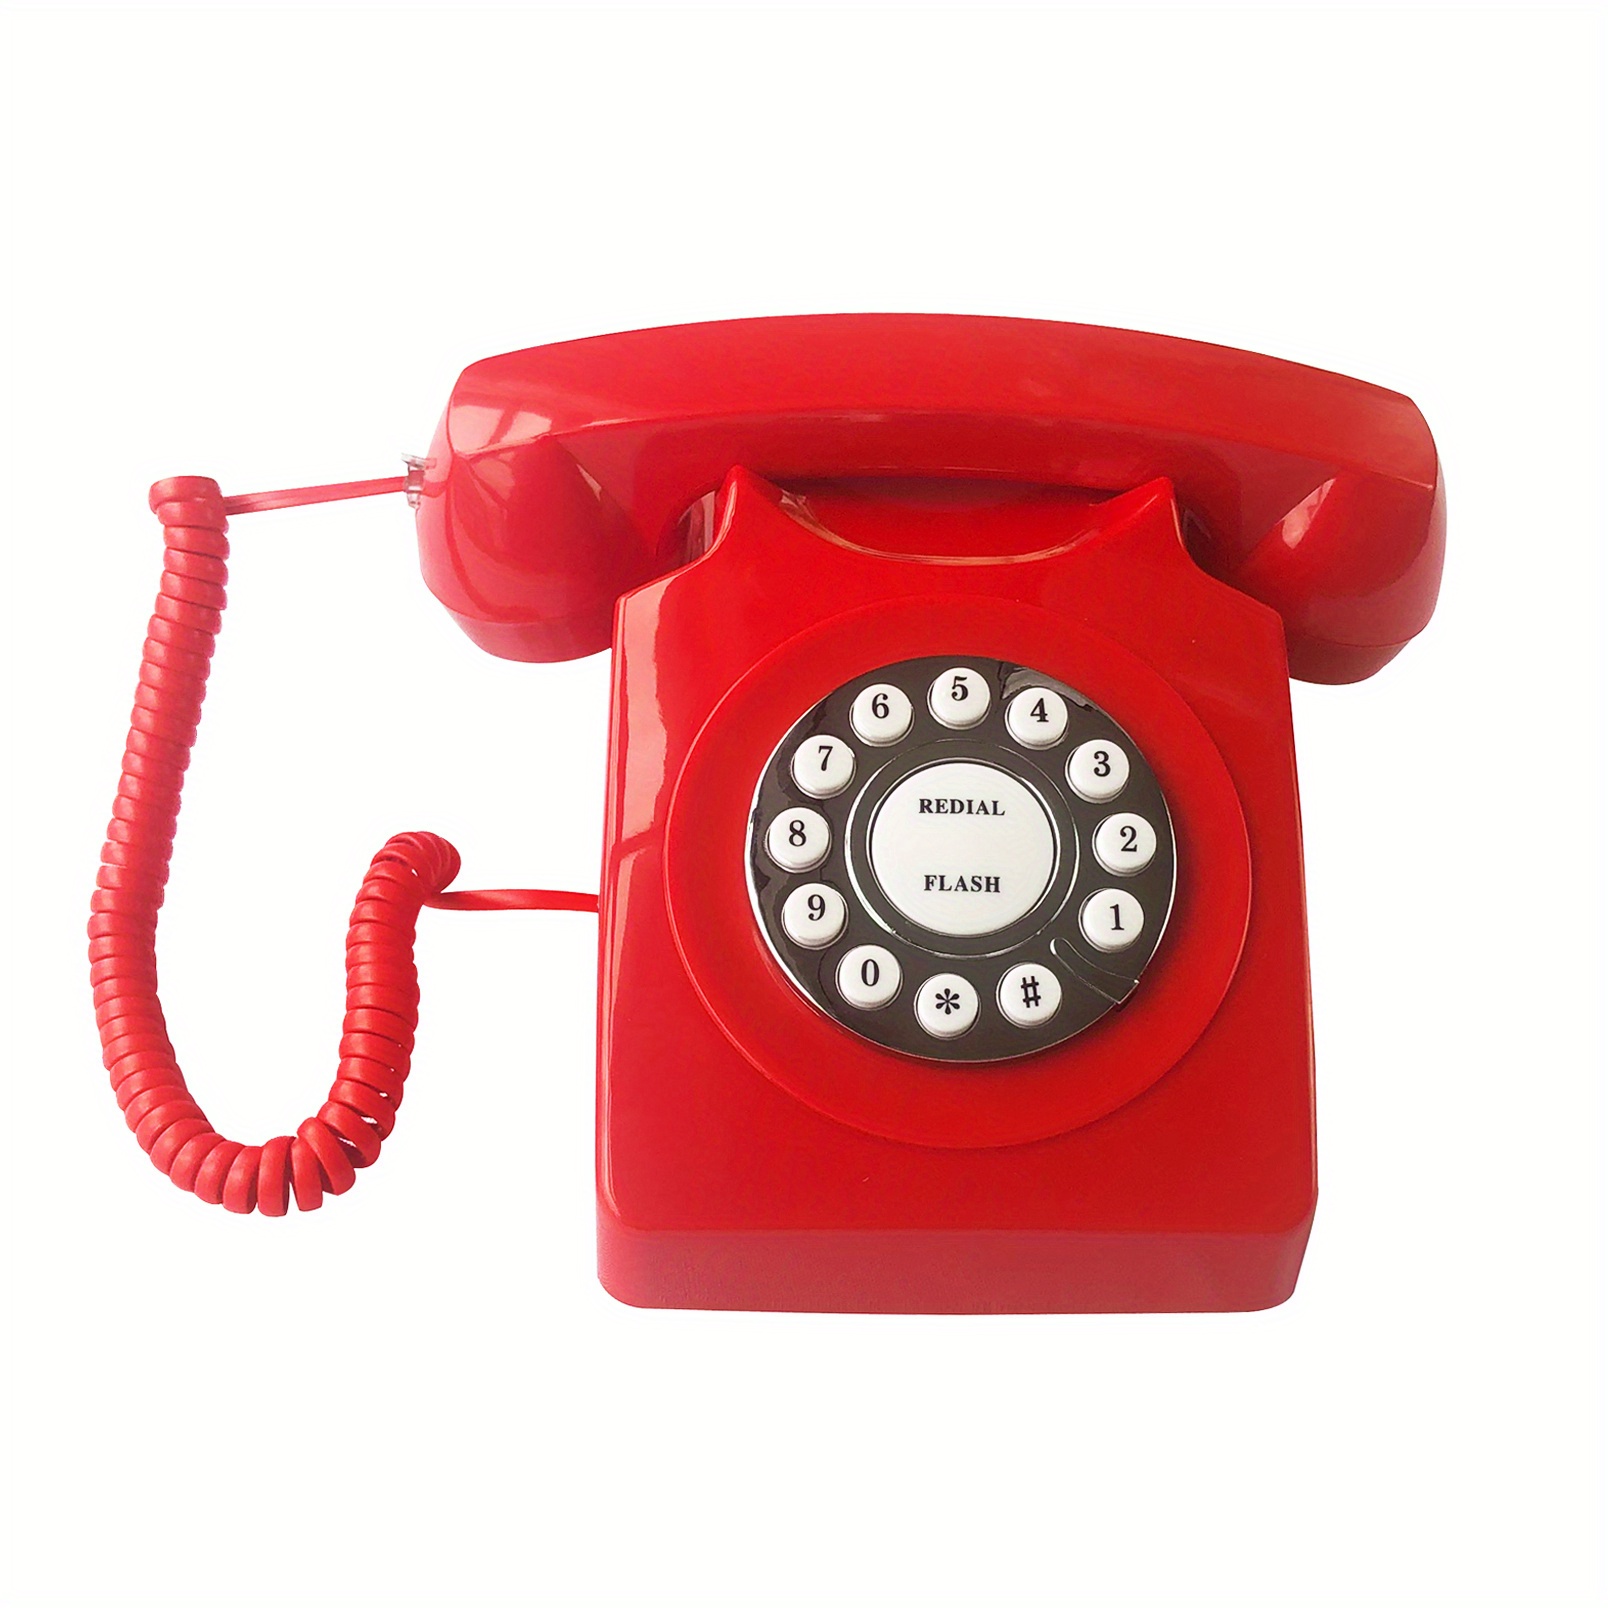 Téléphone vintage de bureau rétro téléphone ancien téléphone fixe filaire à  l'ancienne pour téléphone de bureau à domicile noir / rose / vert